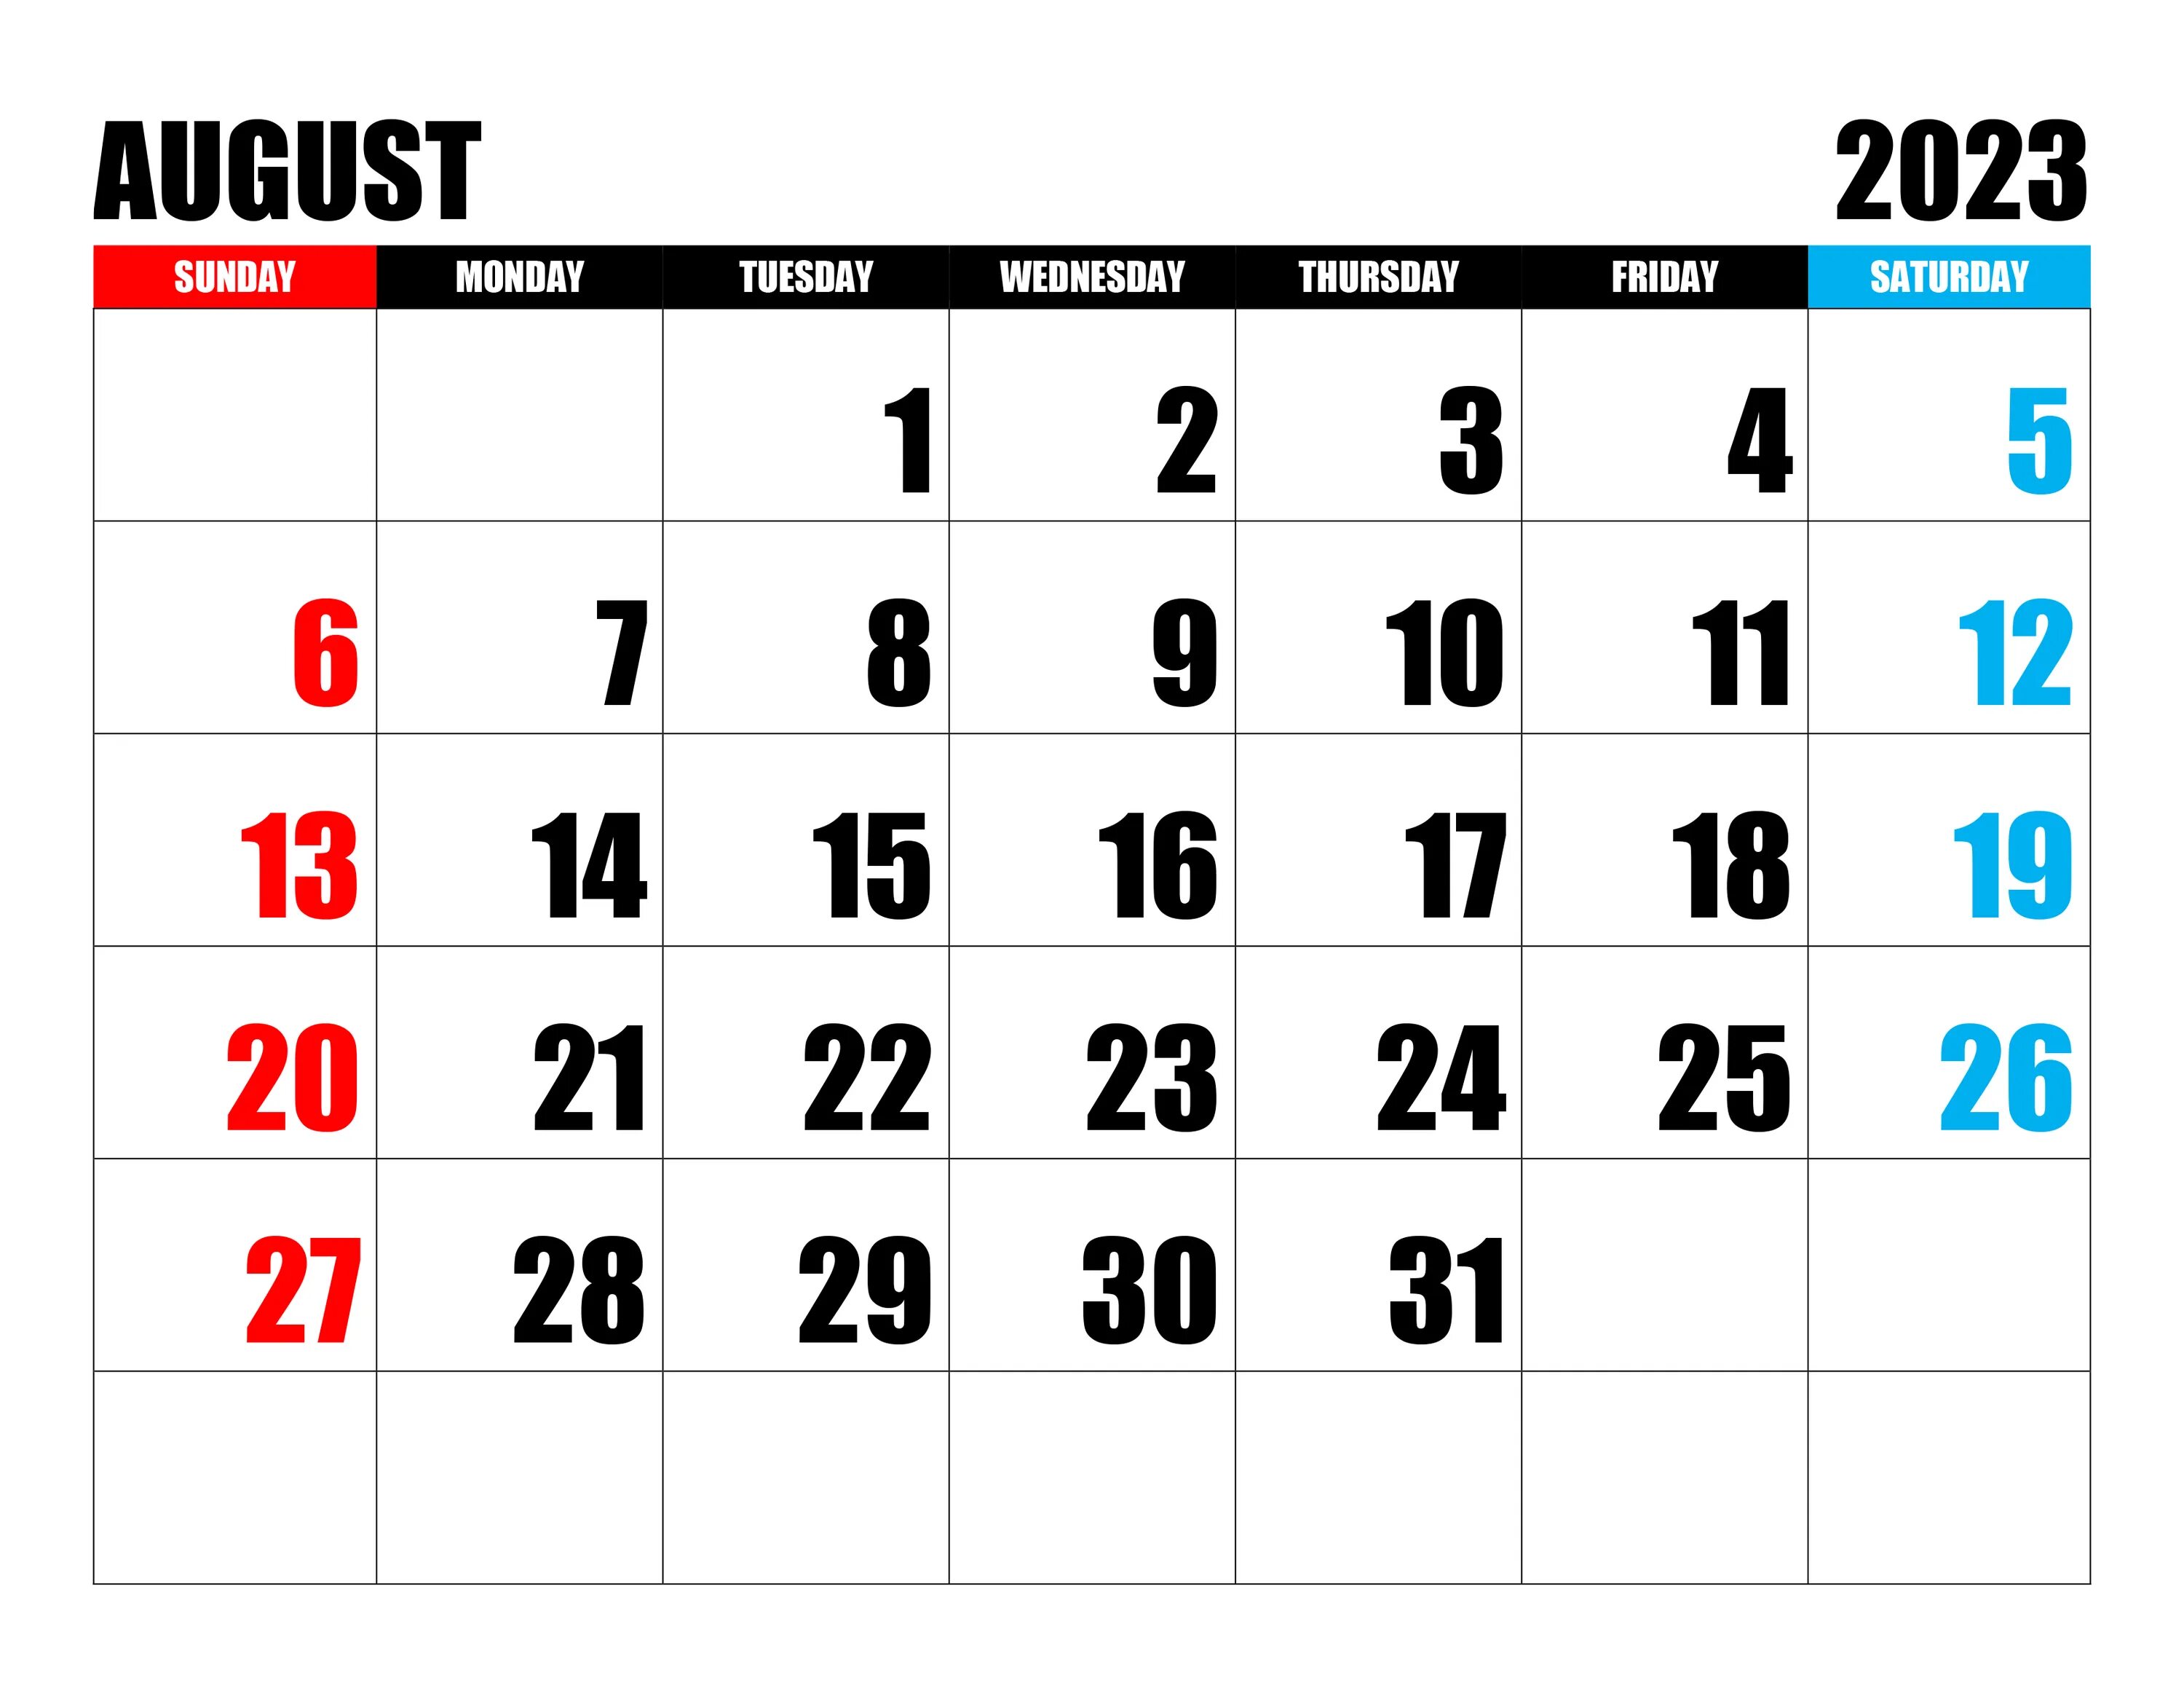 Календарь август 2023. Календарь на август 2023 года. Календарь на аагуст2023 года. Календарь июль август 2023. Июнь август 2023